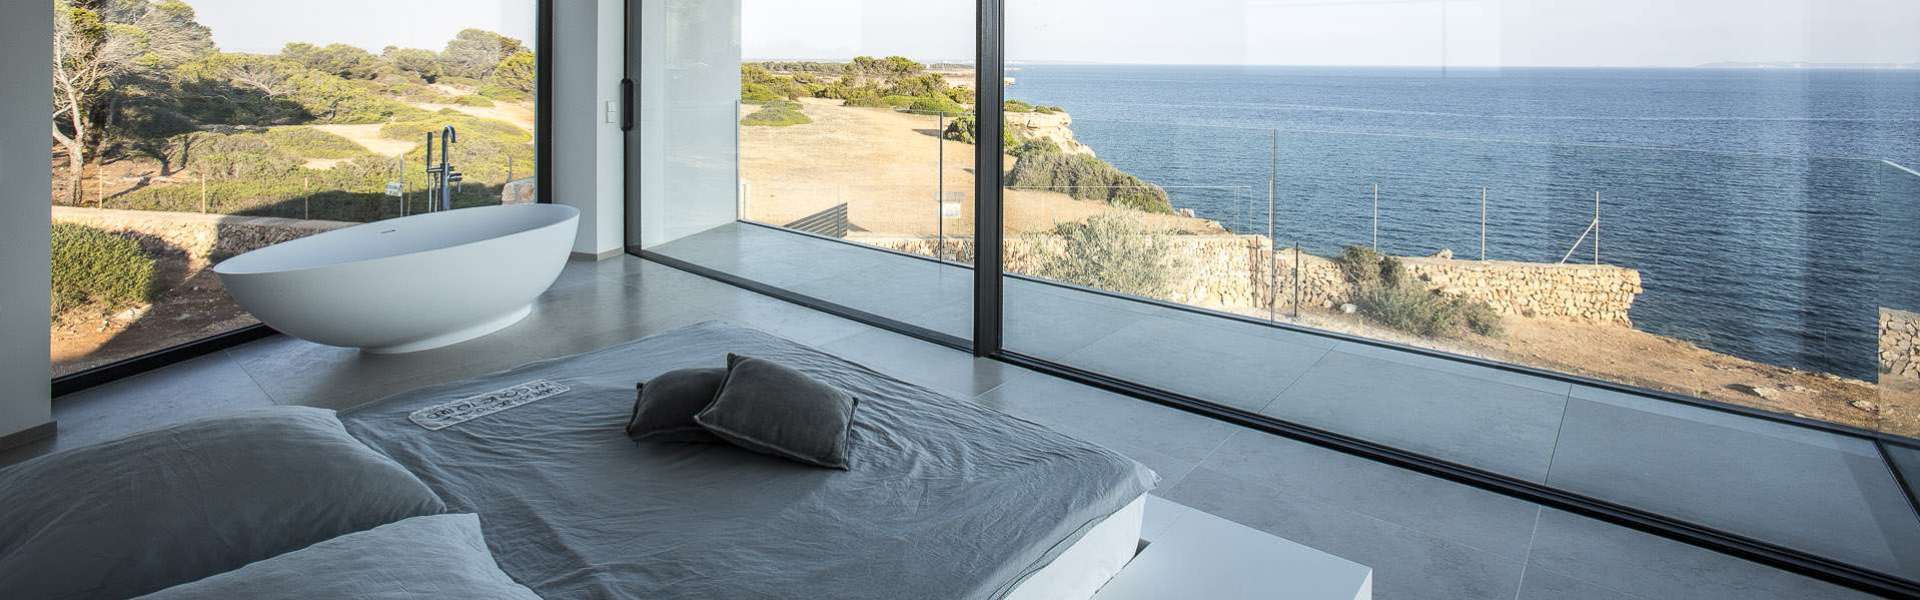 Cala Pi - Exklusive Villa direkt am Meer